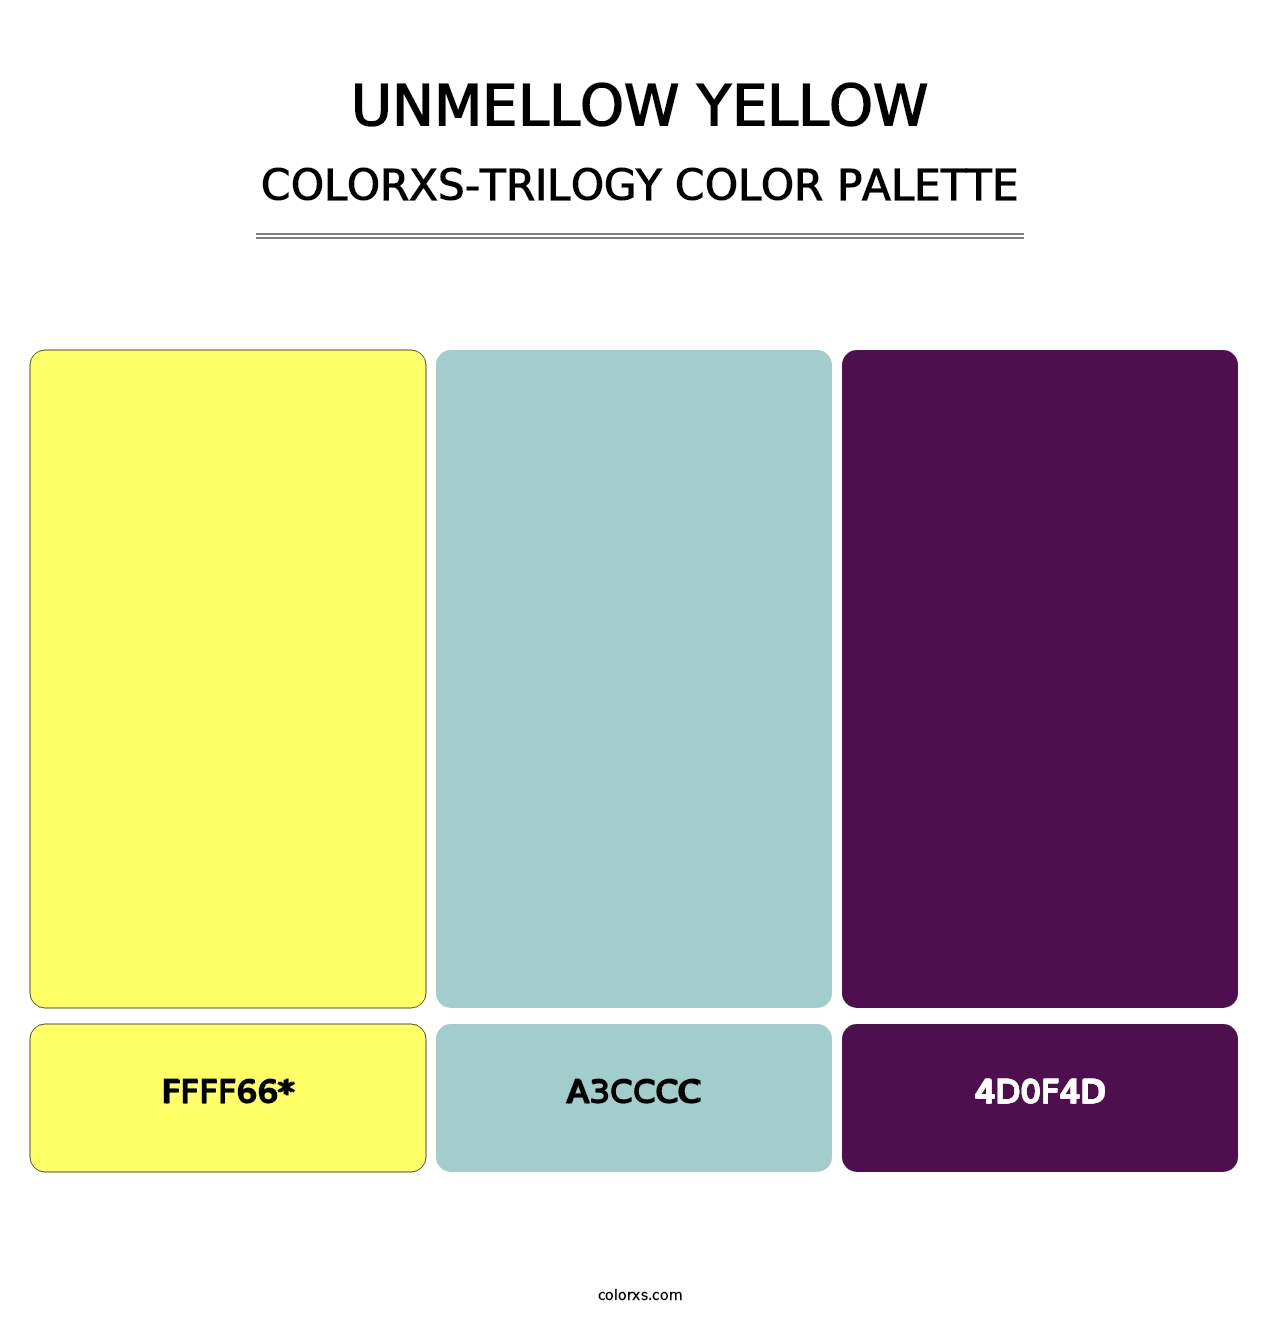 Unmellow Yellow - Colorxs Trilogy Palette